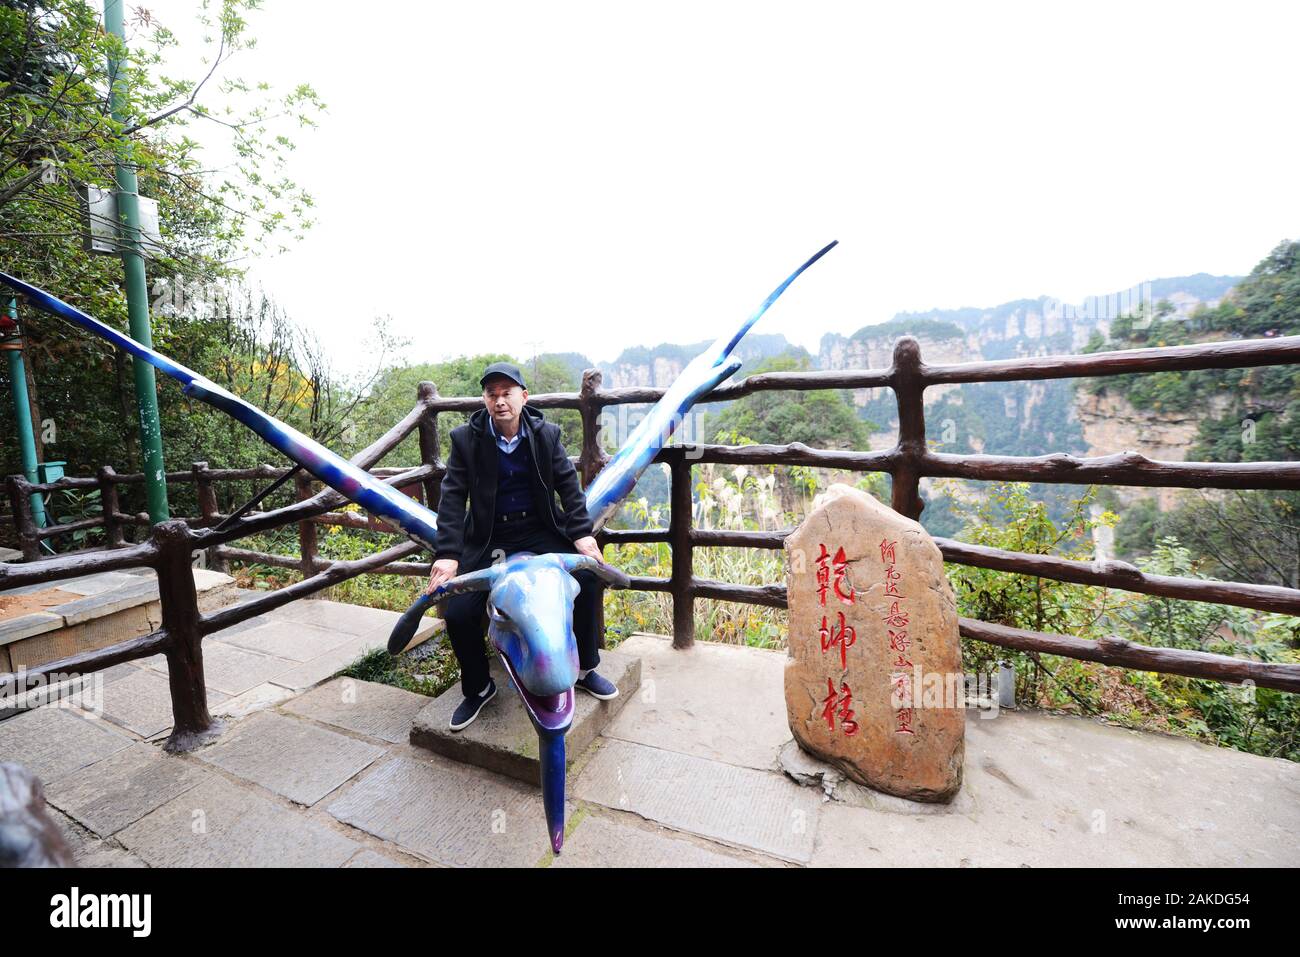 Poser pour une photo sur un BBunshee Avatar à Zhangjiajie, Chine. Banque D'Images